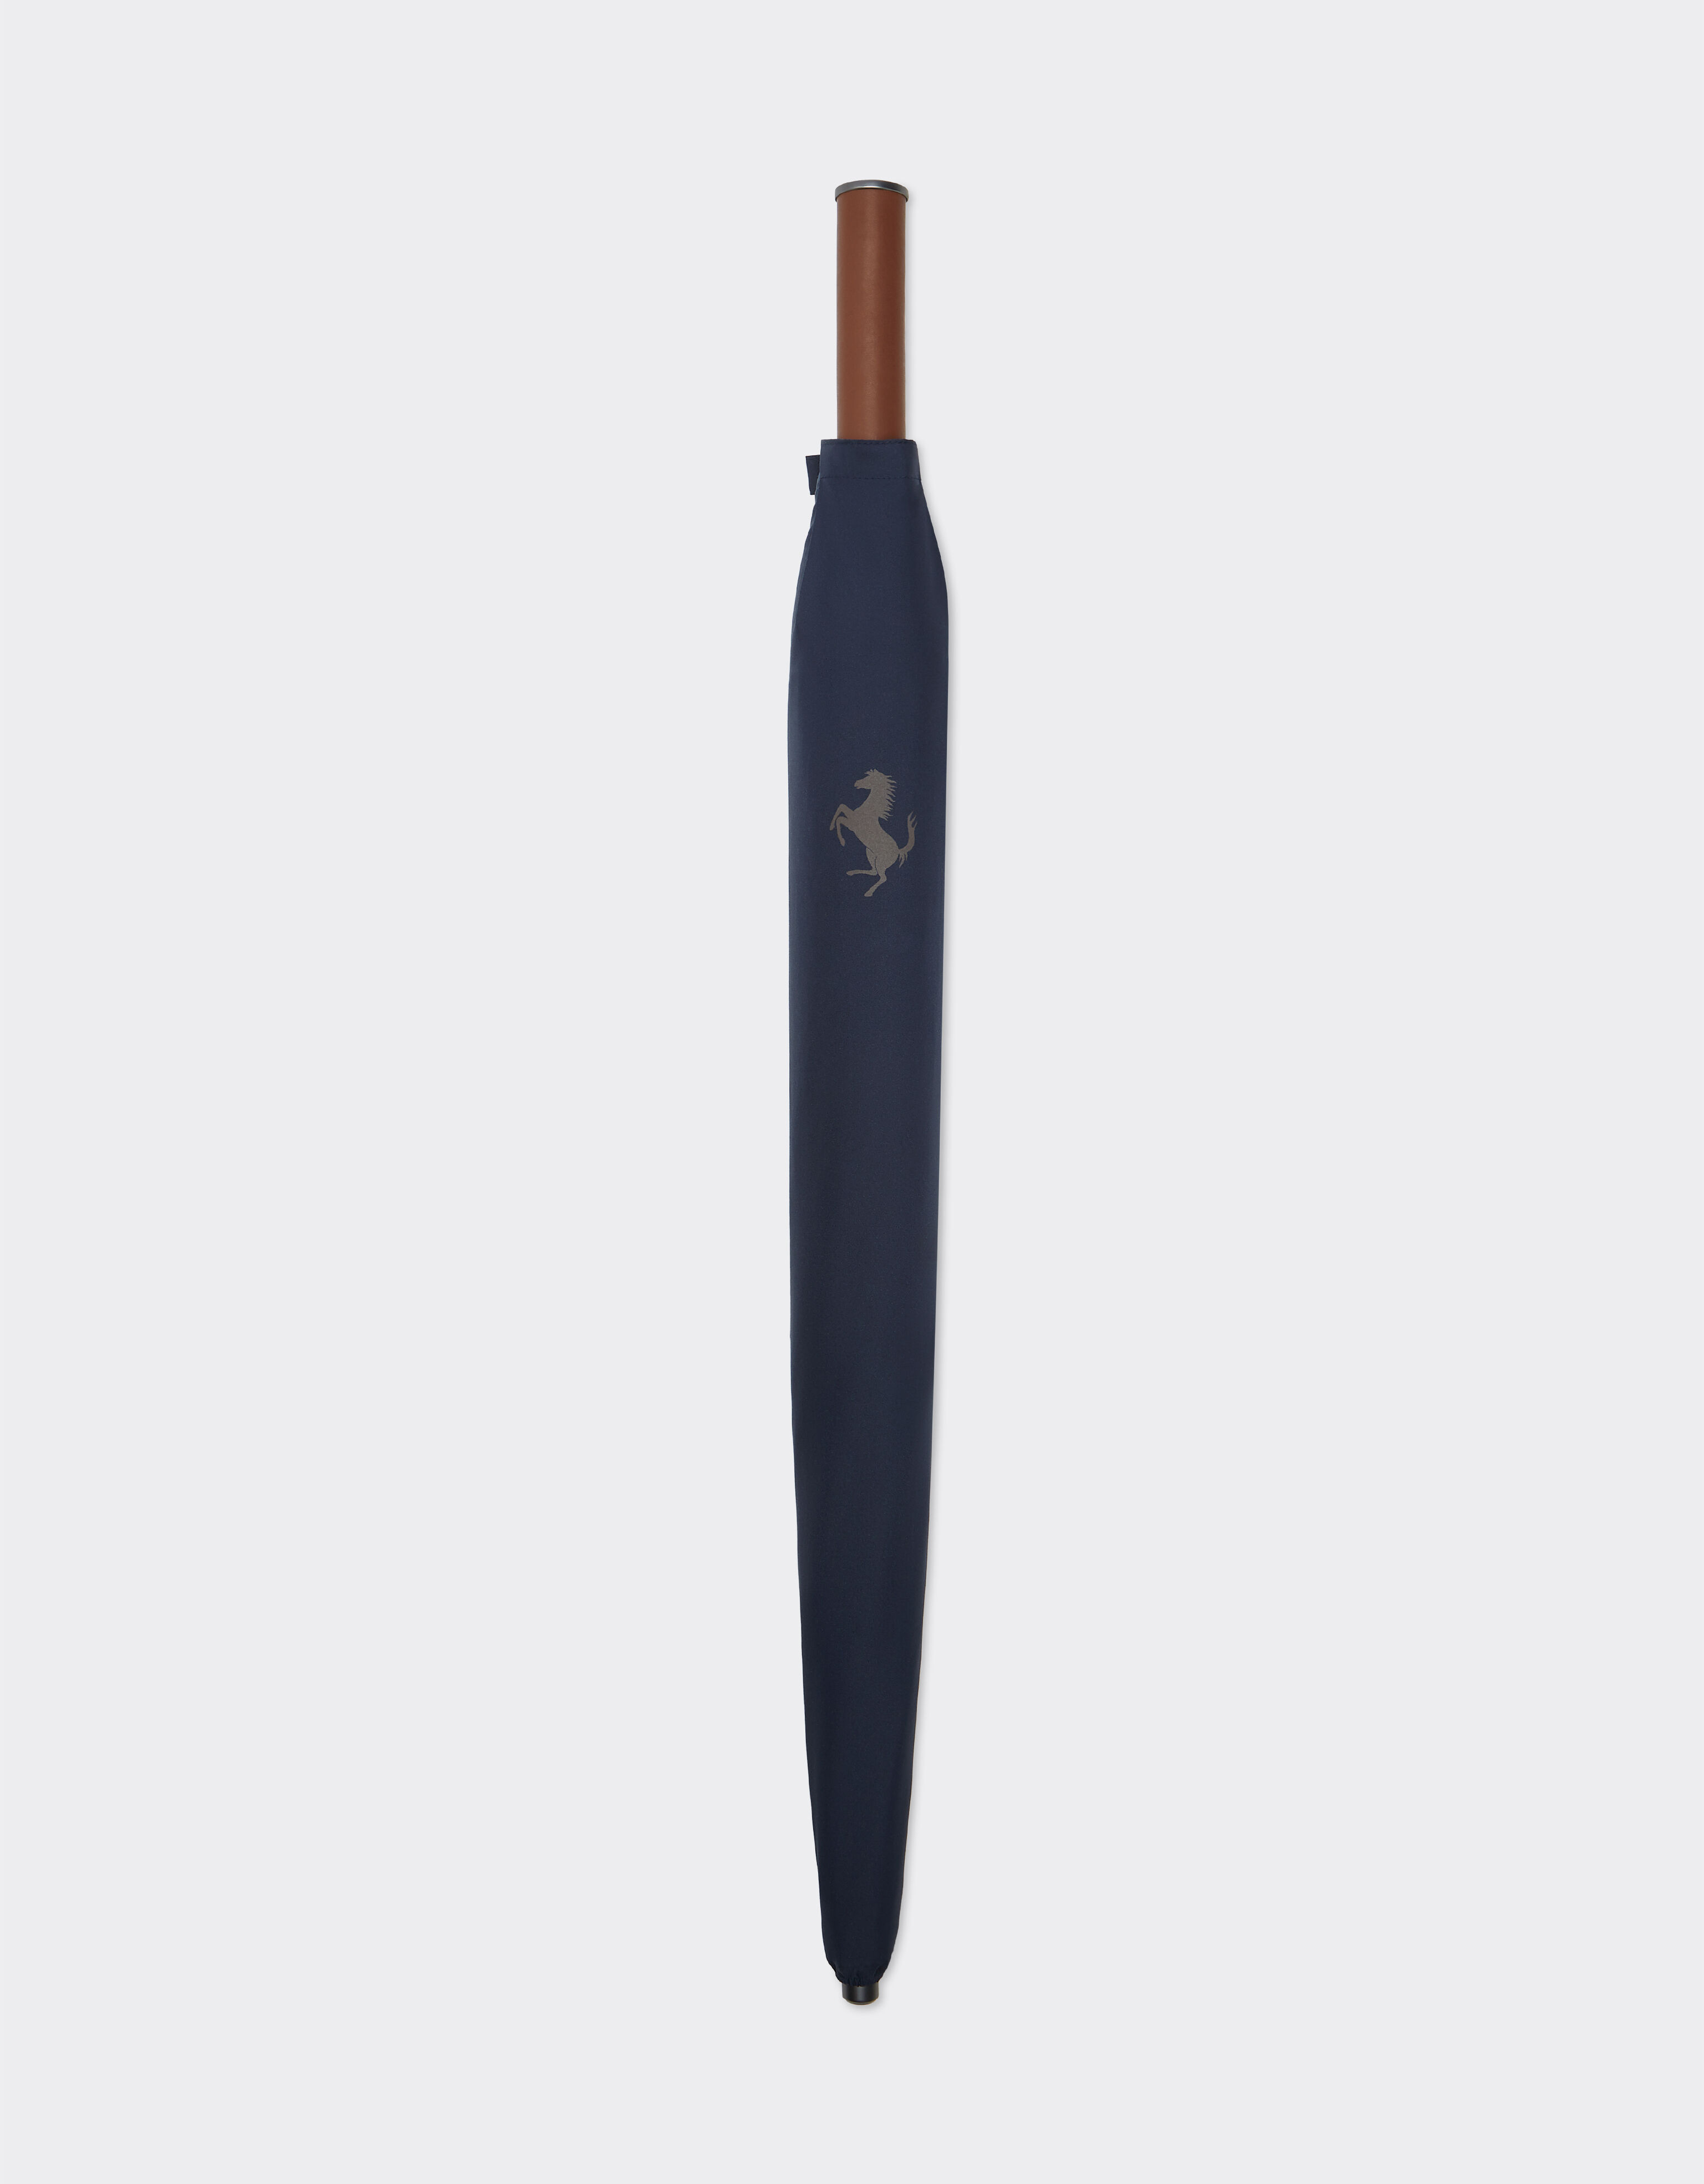 Ferrari Parapluie avec motif Cheval cabré pixélisé Bleu marine 20381f